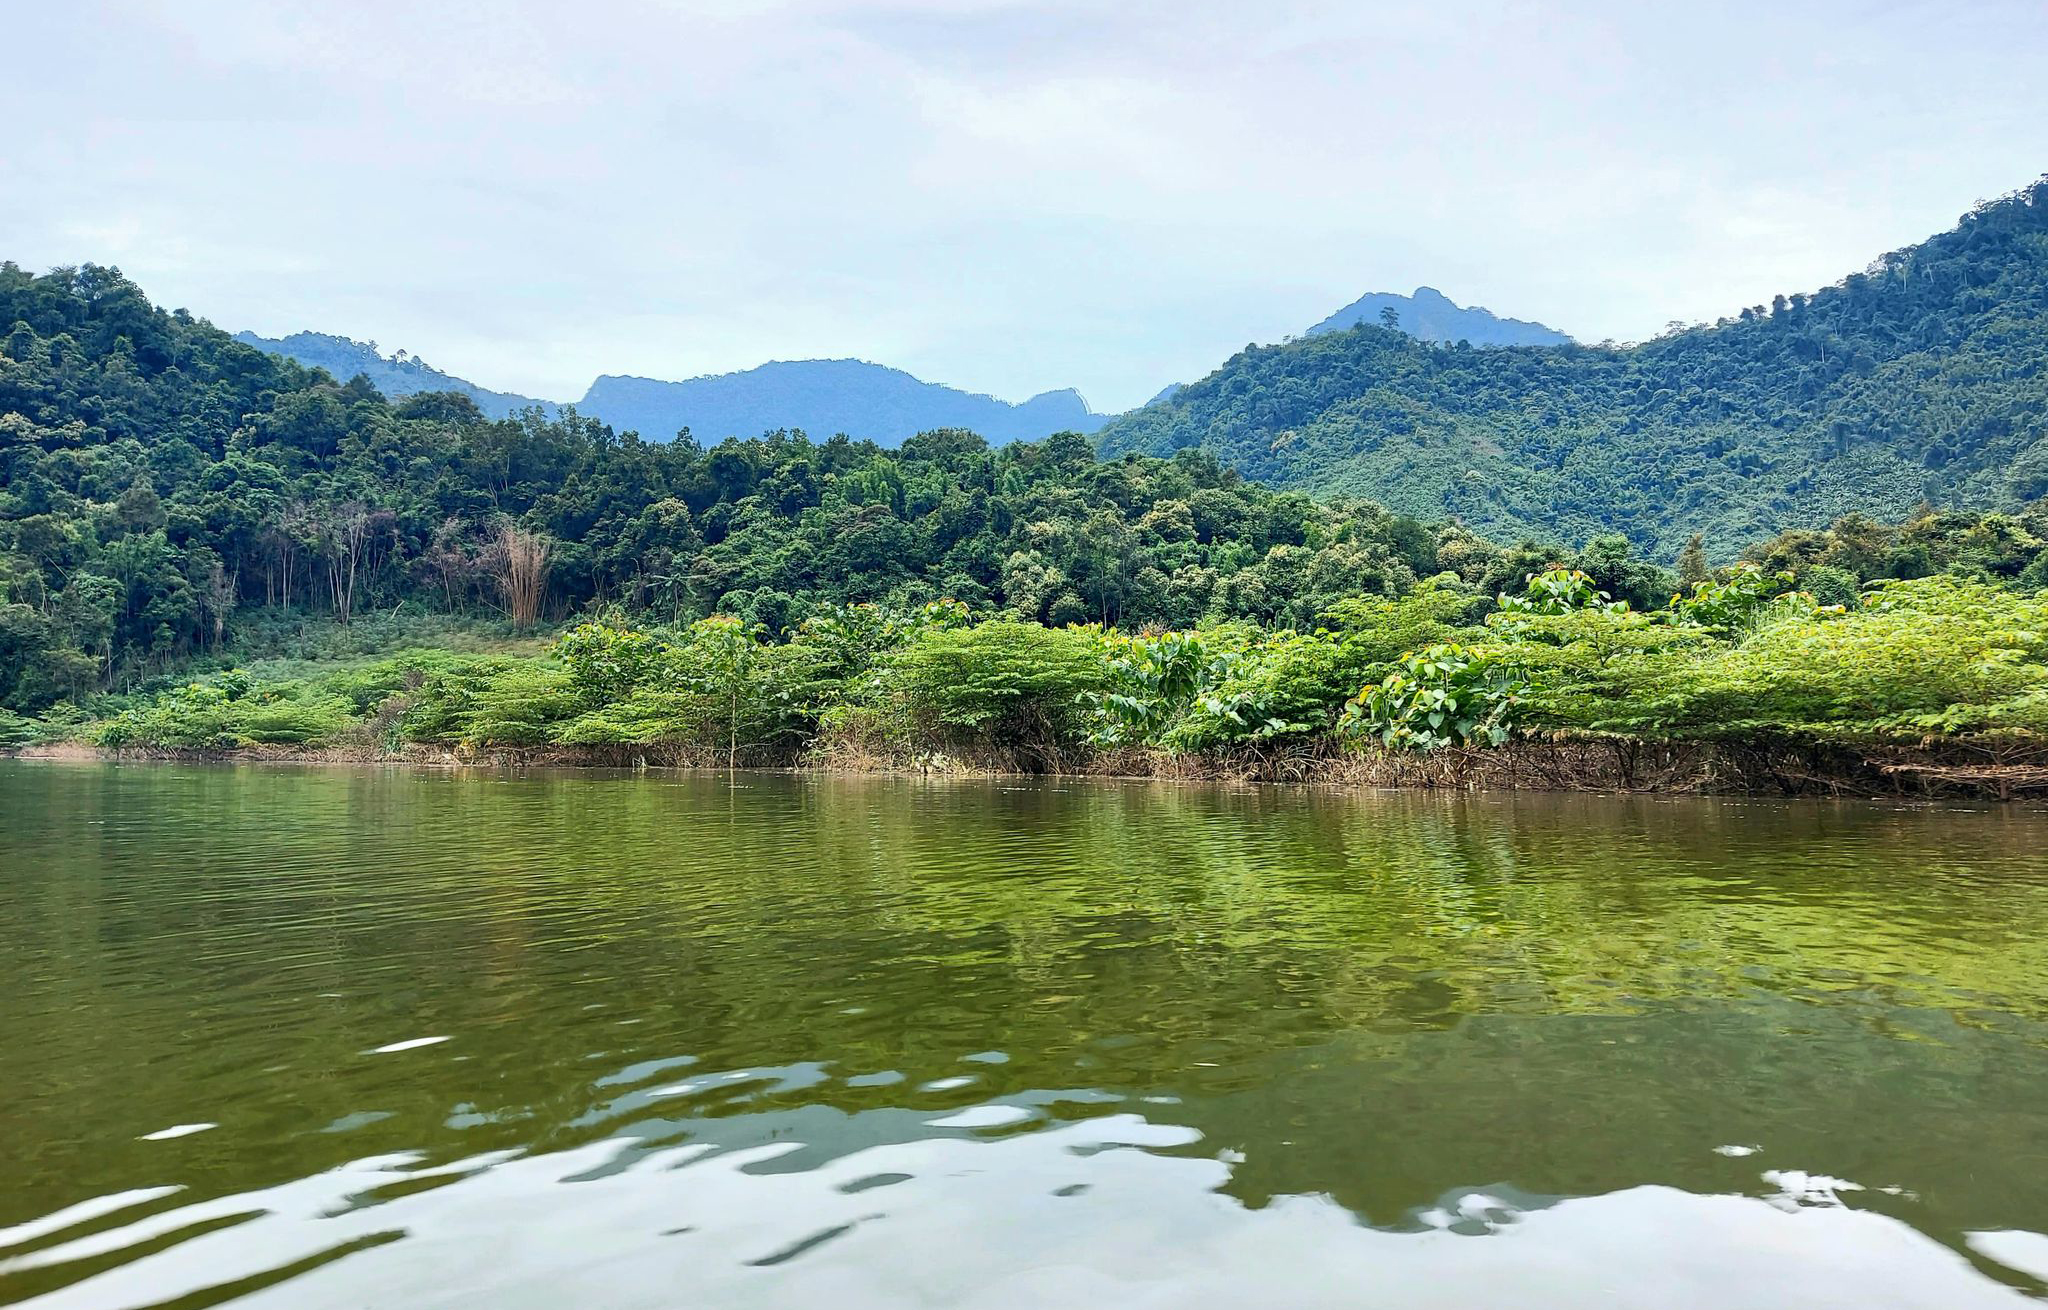 Vùng lòng hồ thủy điện Hủa Na, nhờ được quản lý bảo vệ nên rừng đã tái sinh trở lại tạo nên cảnh quan rất đẹp.